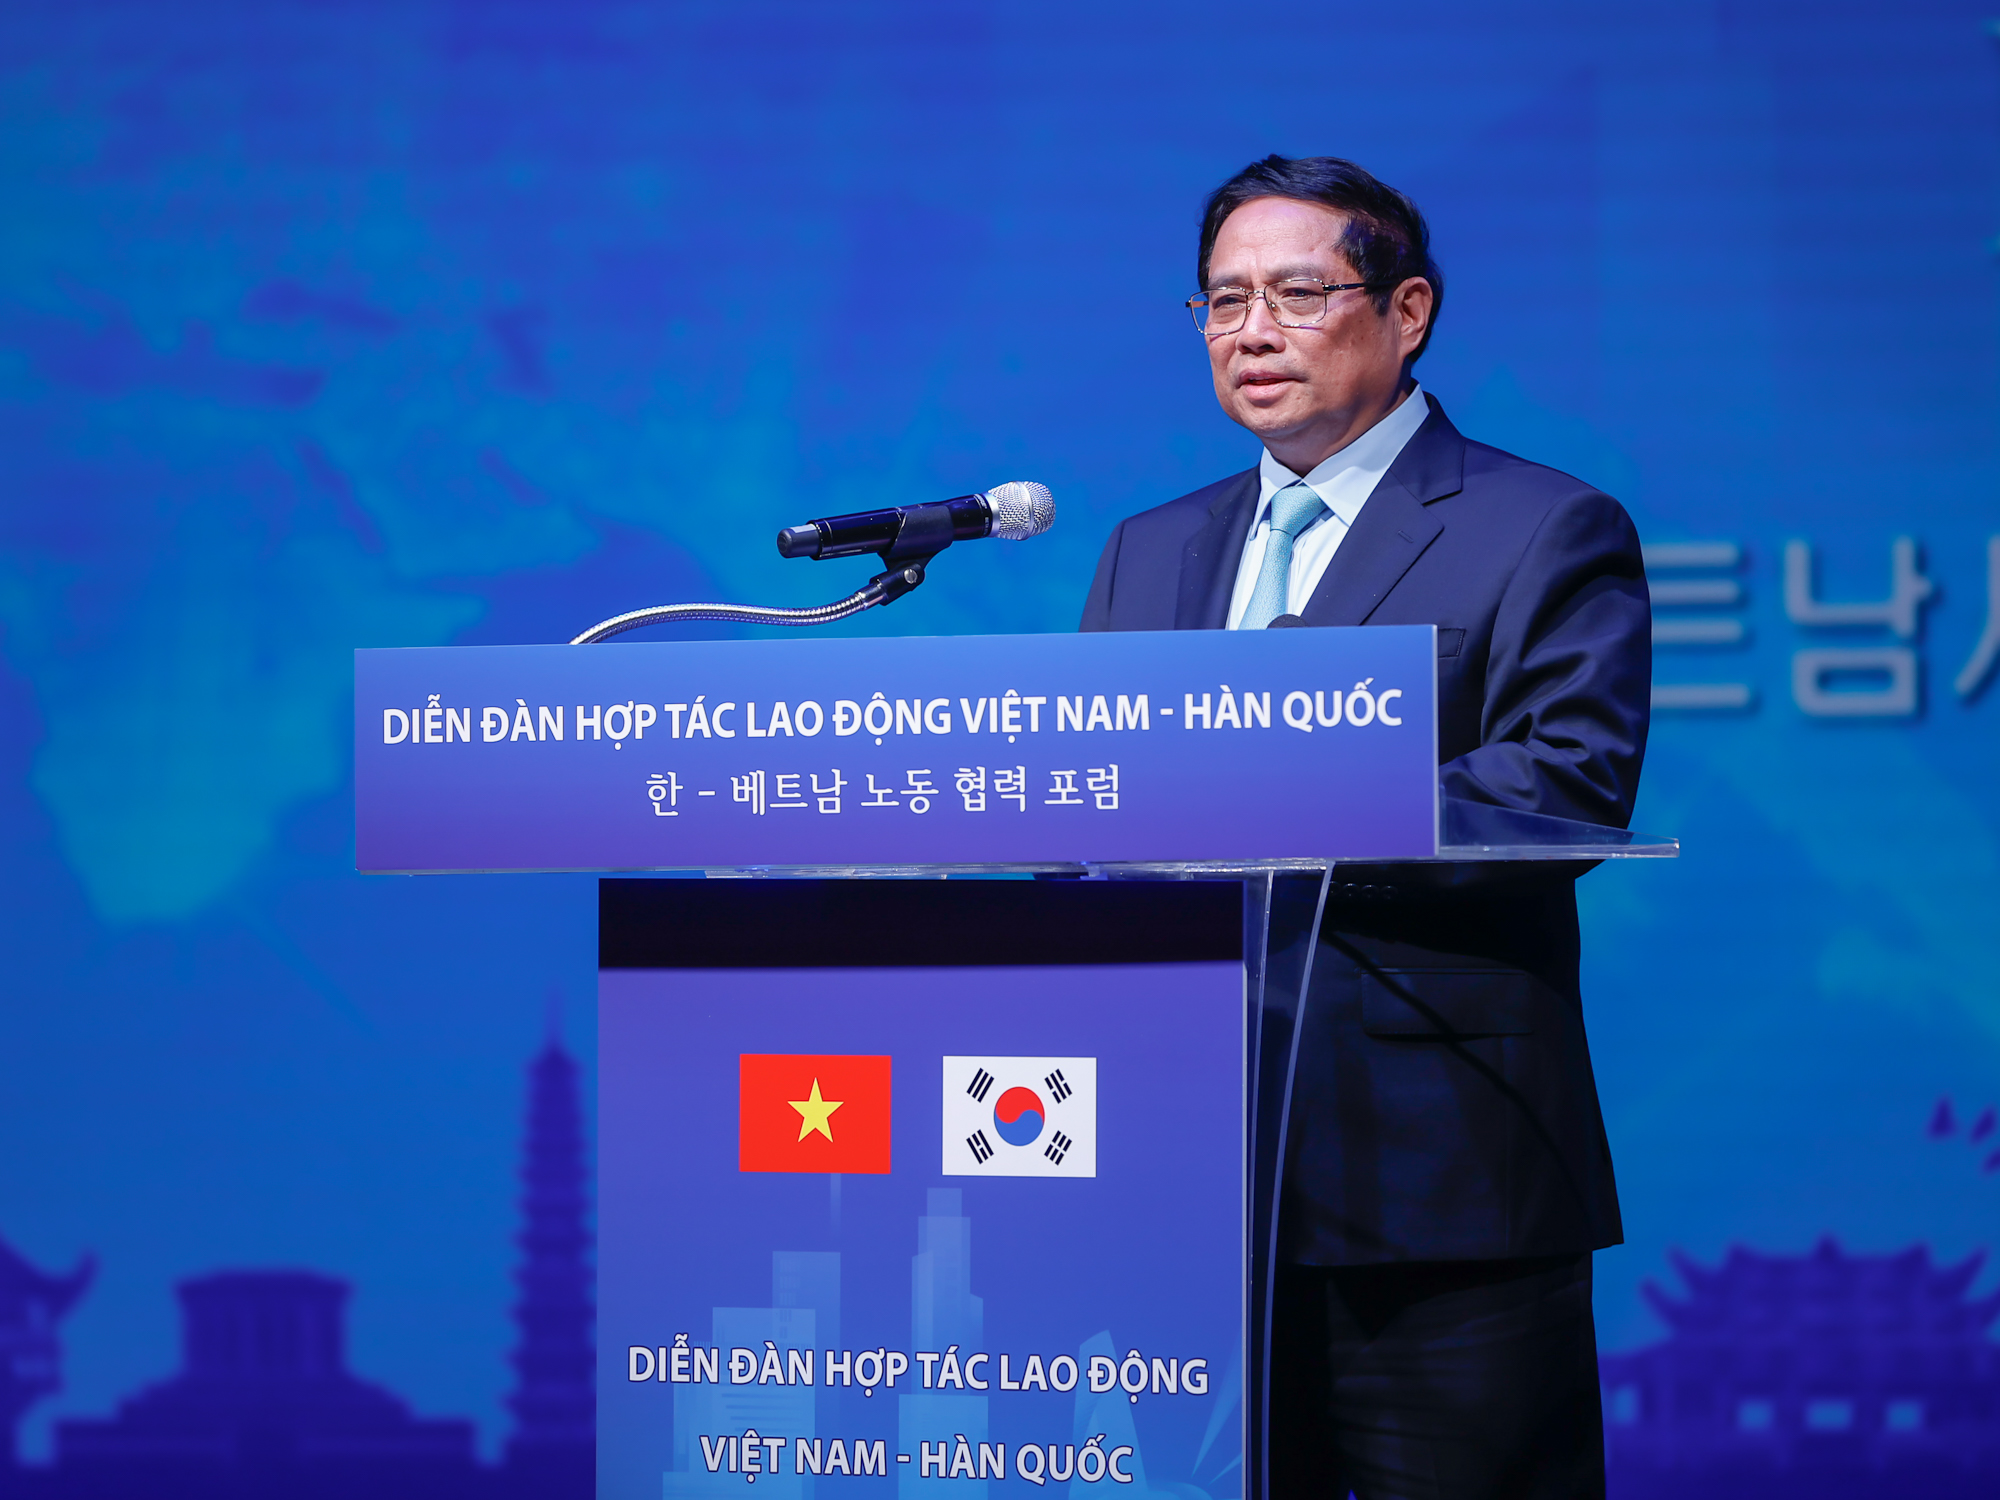 Tạo thuận lợi nhất cho người lao động, nâng tầm hợp tác lao động Việt Nam-Hàn Quốc - ảnh 1